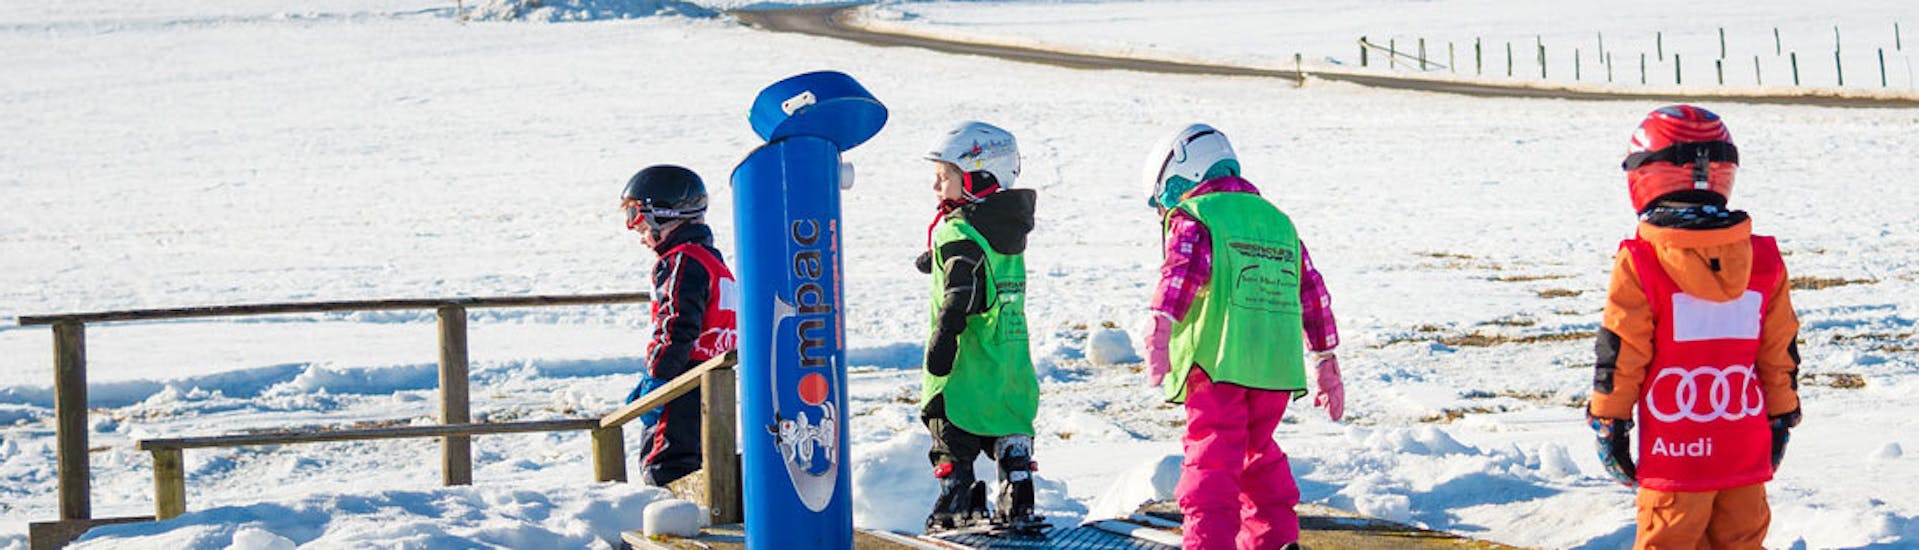 Lezioni di sci per bambini a partire da 4 anni per principianti con Ski School Snow & Bike Factory Willingen.